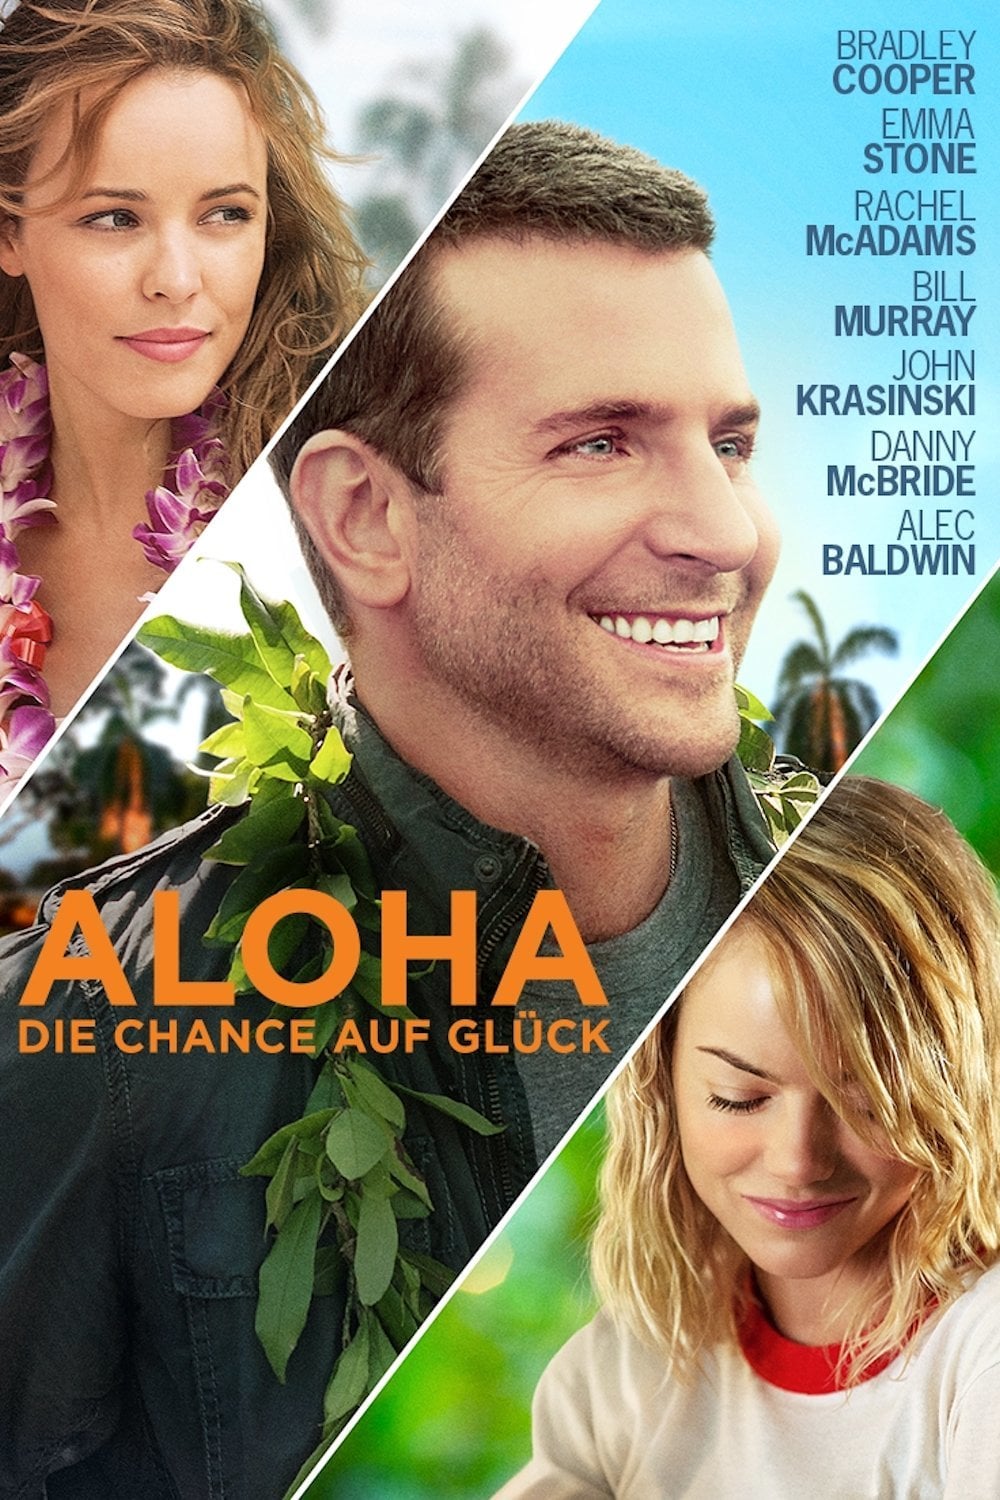 Plakat von "Aloha - Die Chance auf Glück"